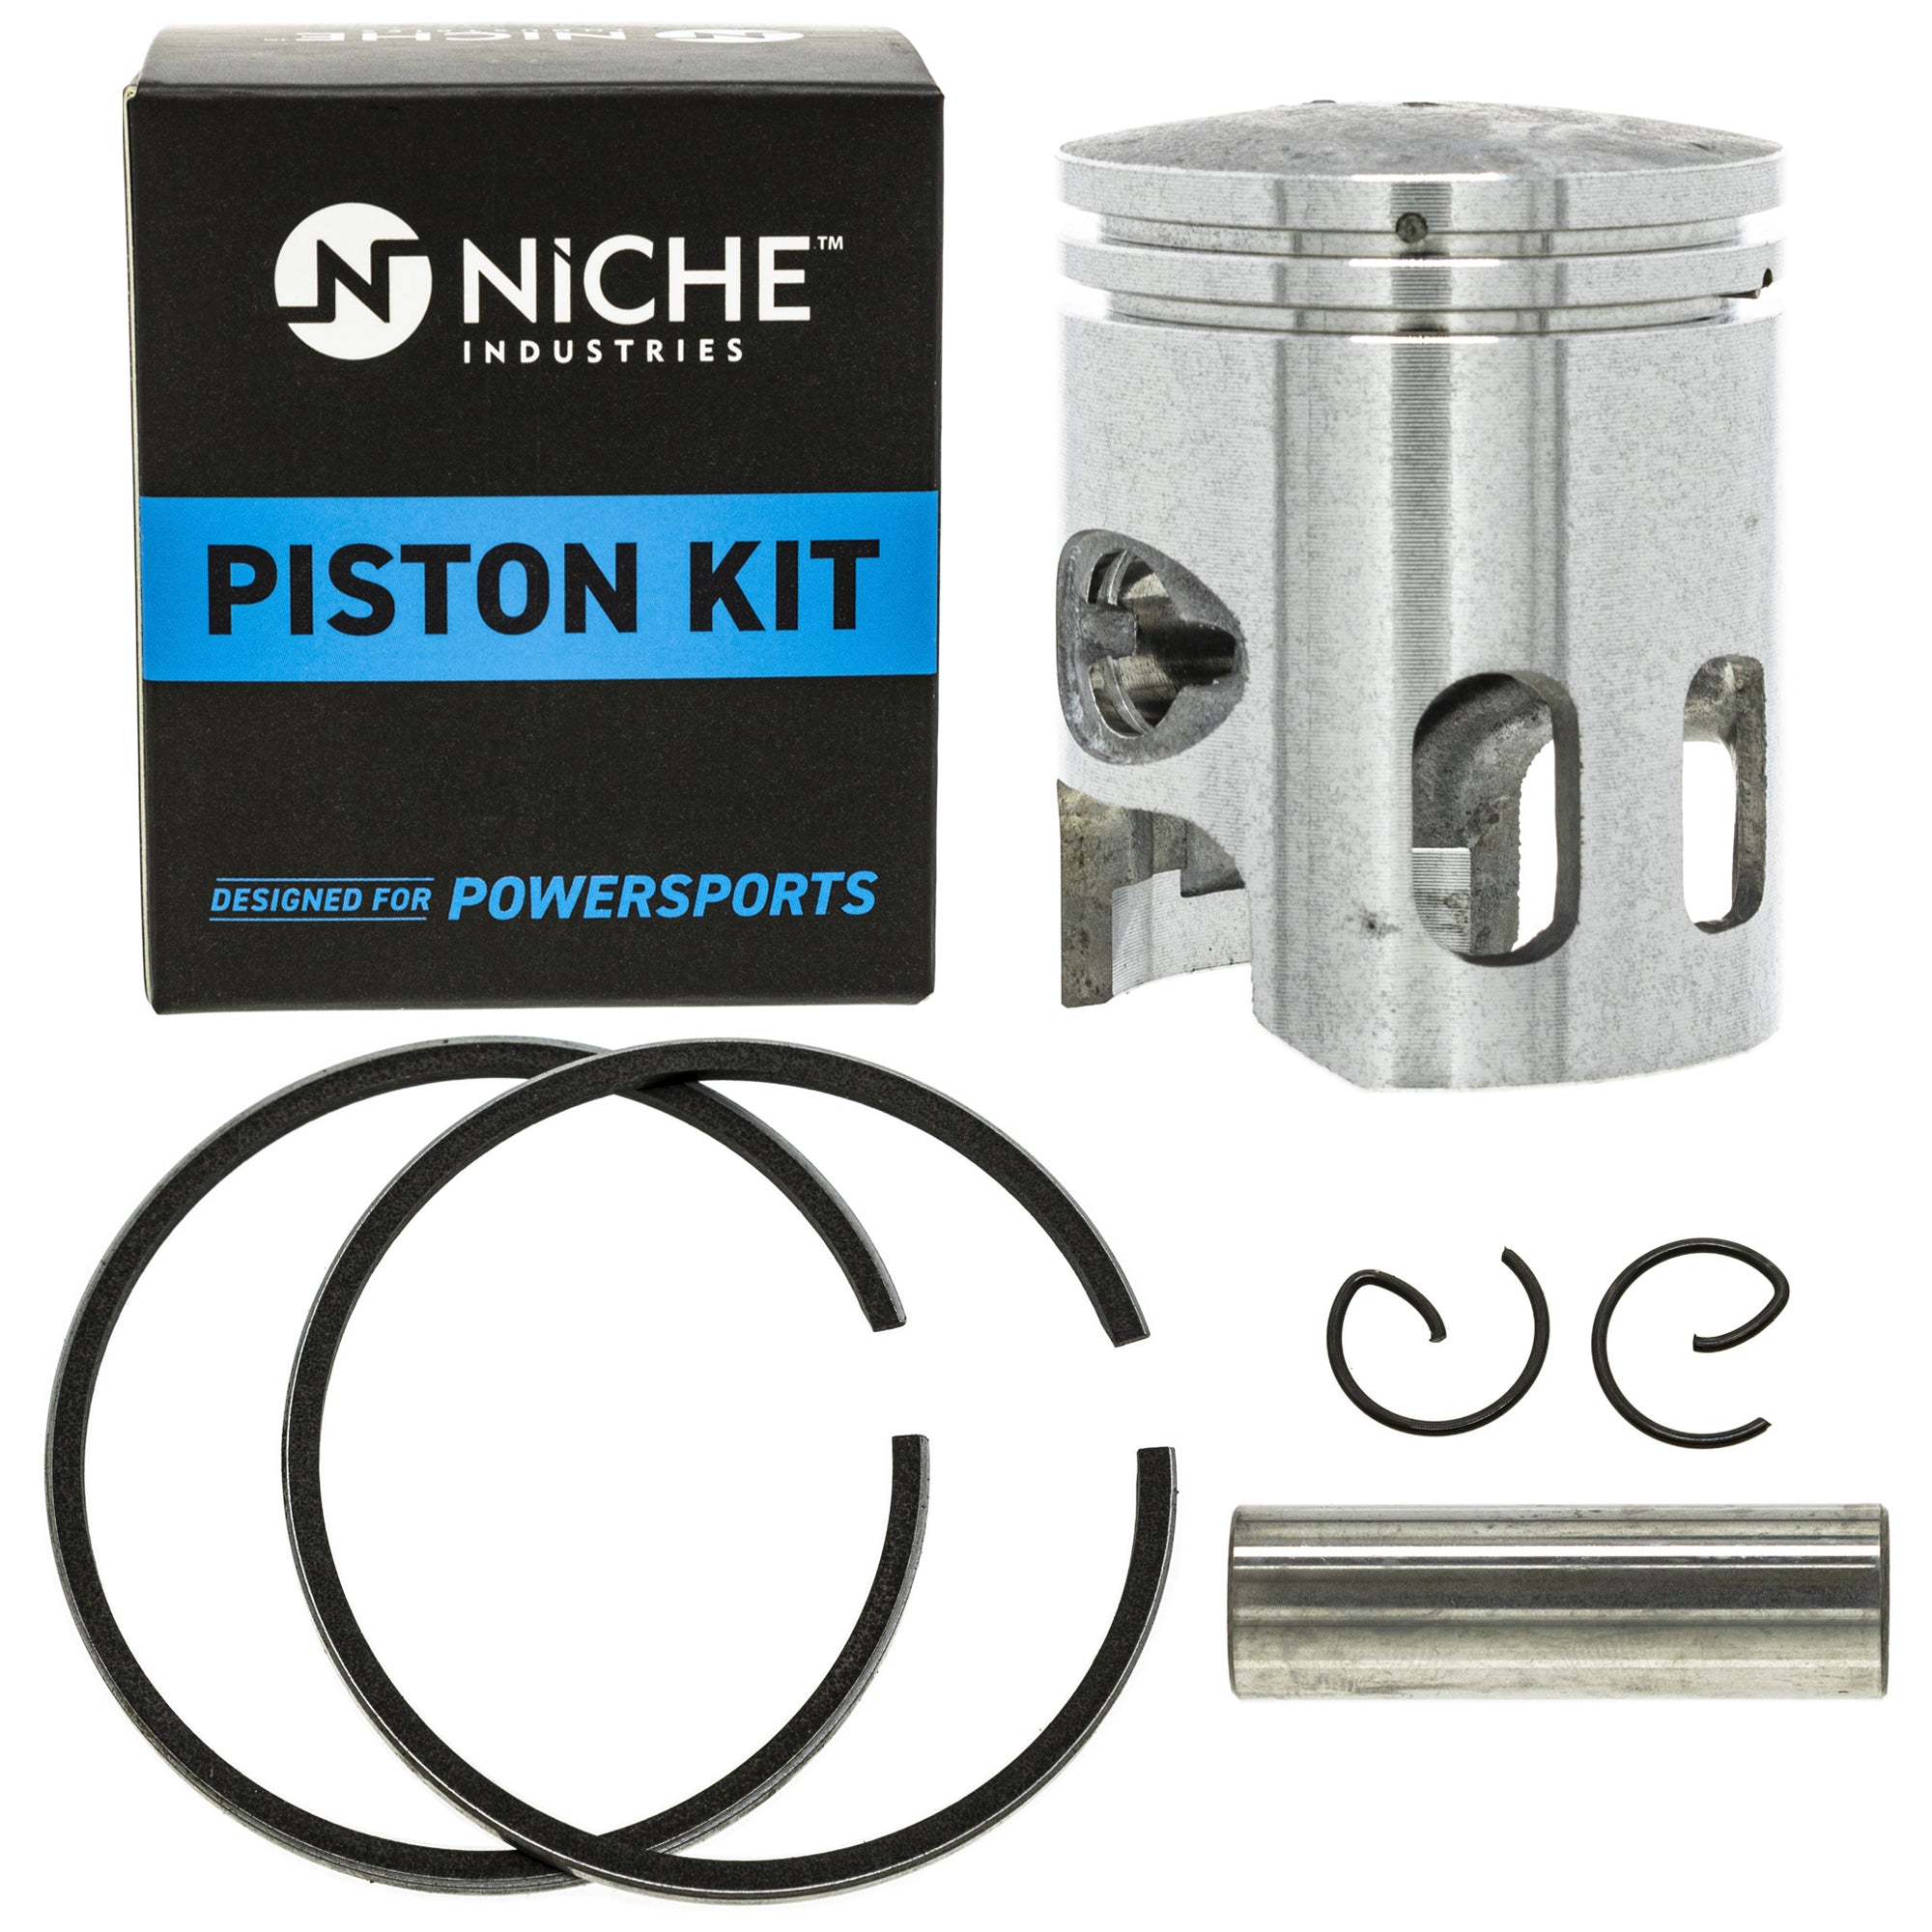 NICHE MK1001137 Piston Kit